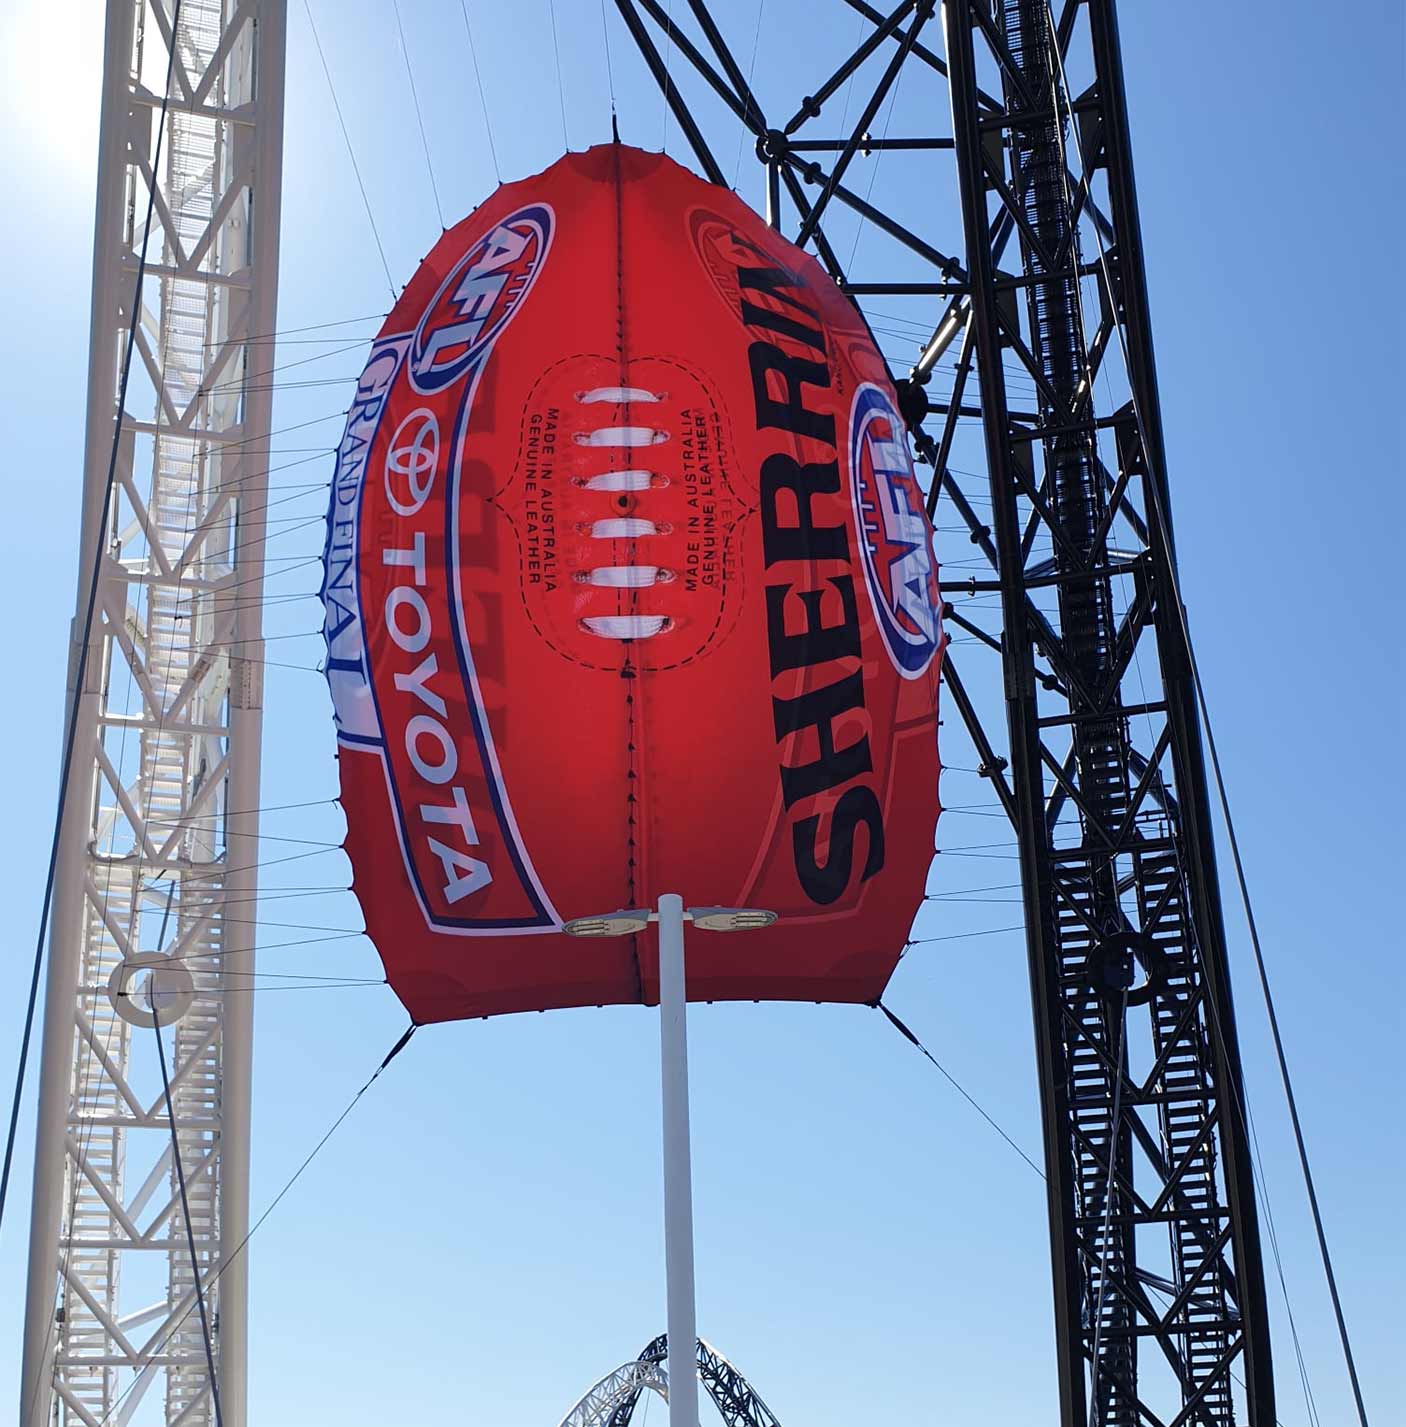 巨大的AFL谢林足球横幅展示在马塔加鲁普大桥上